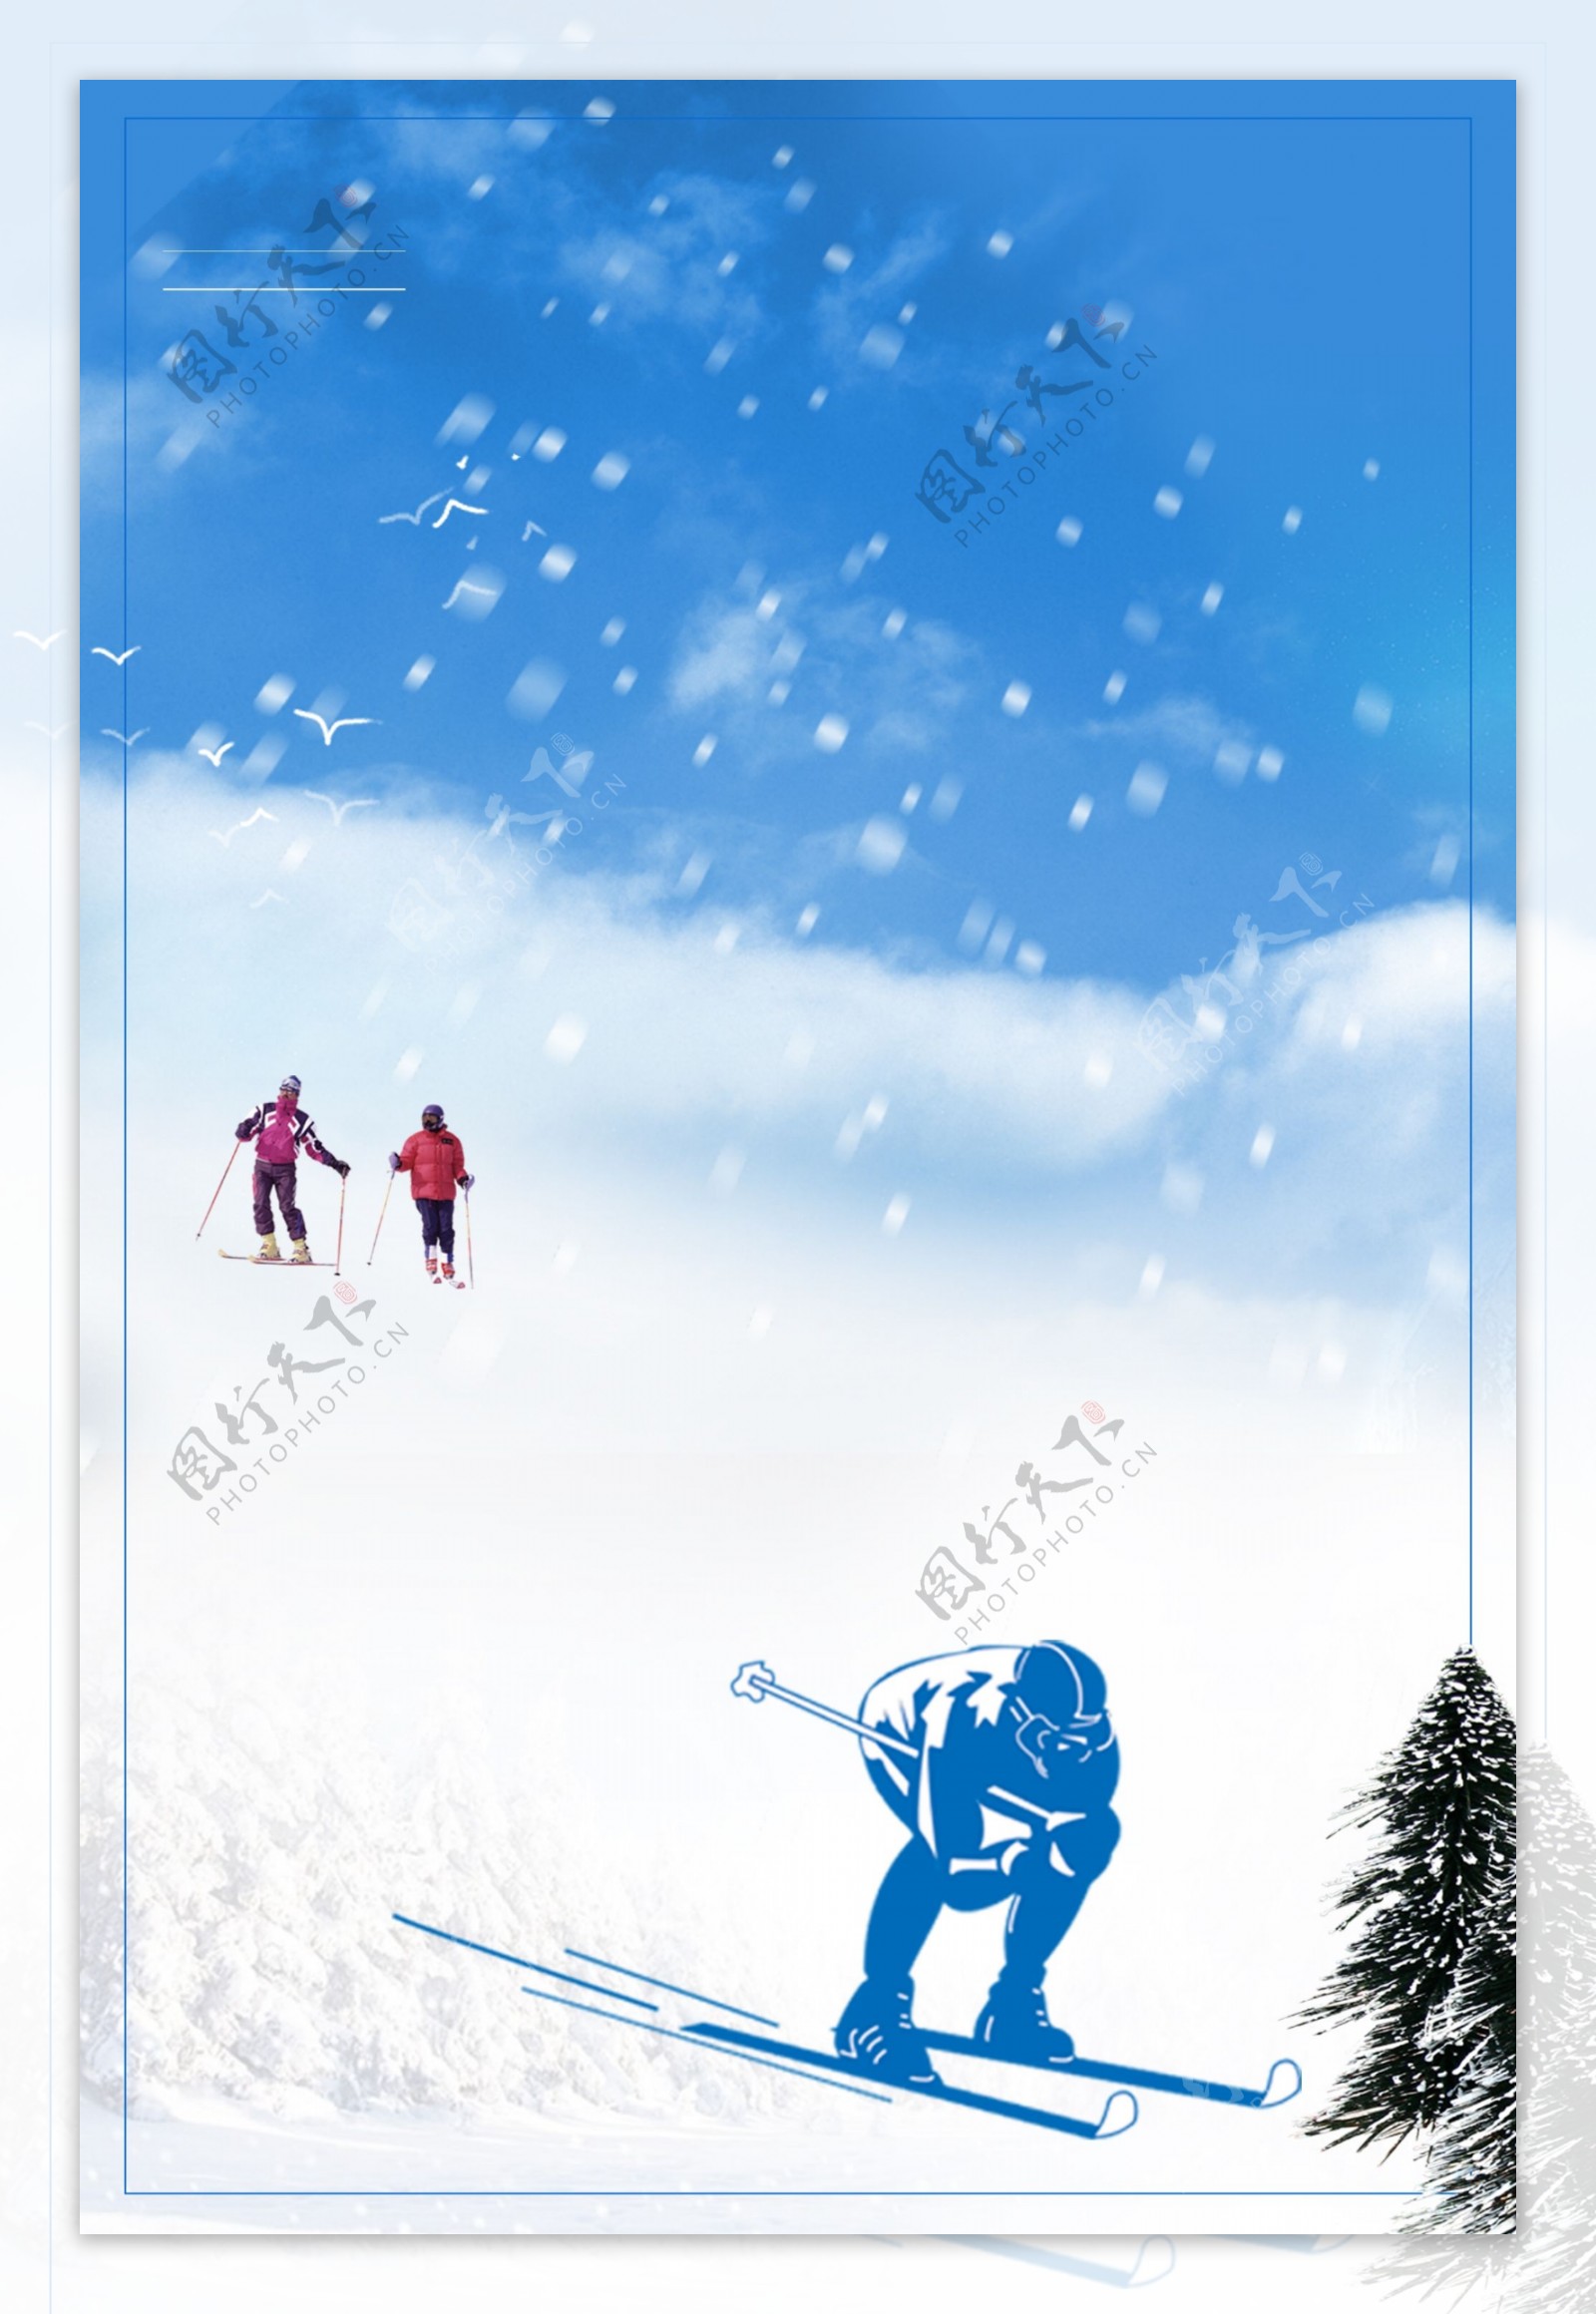 唯美冬季滑雪背景设计